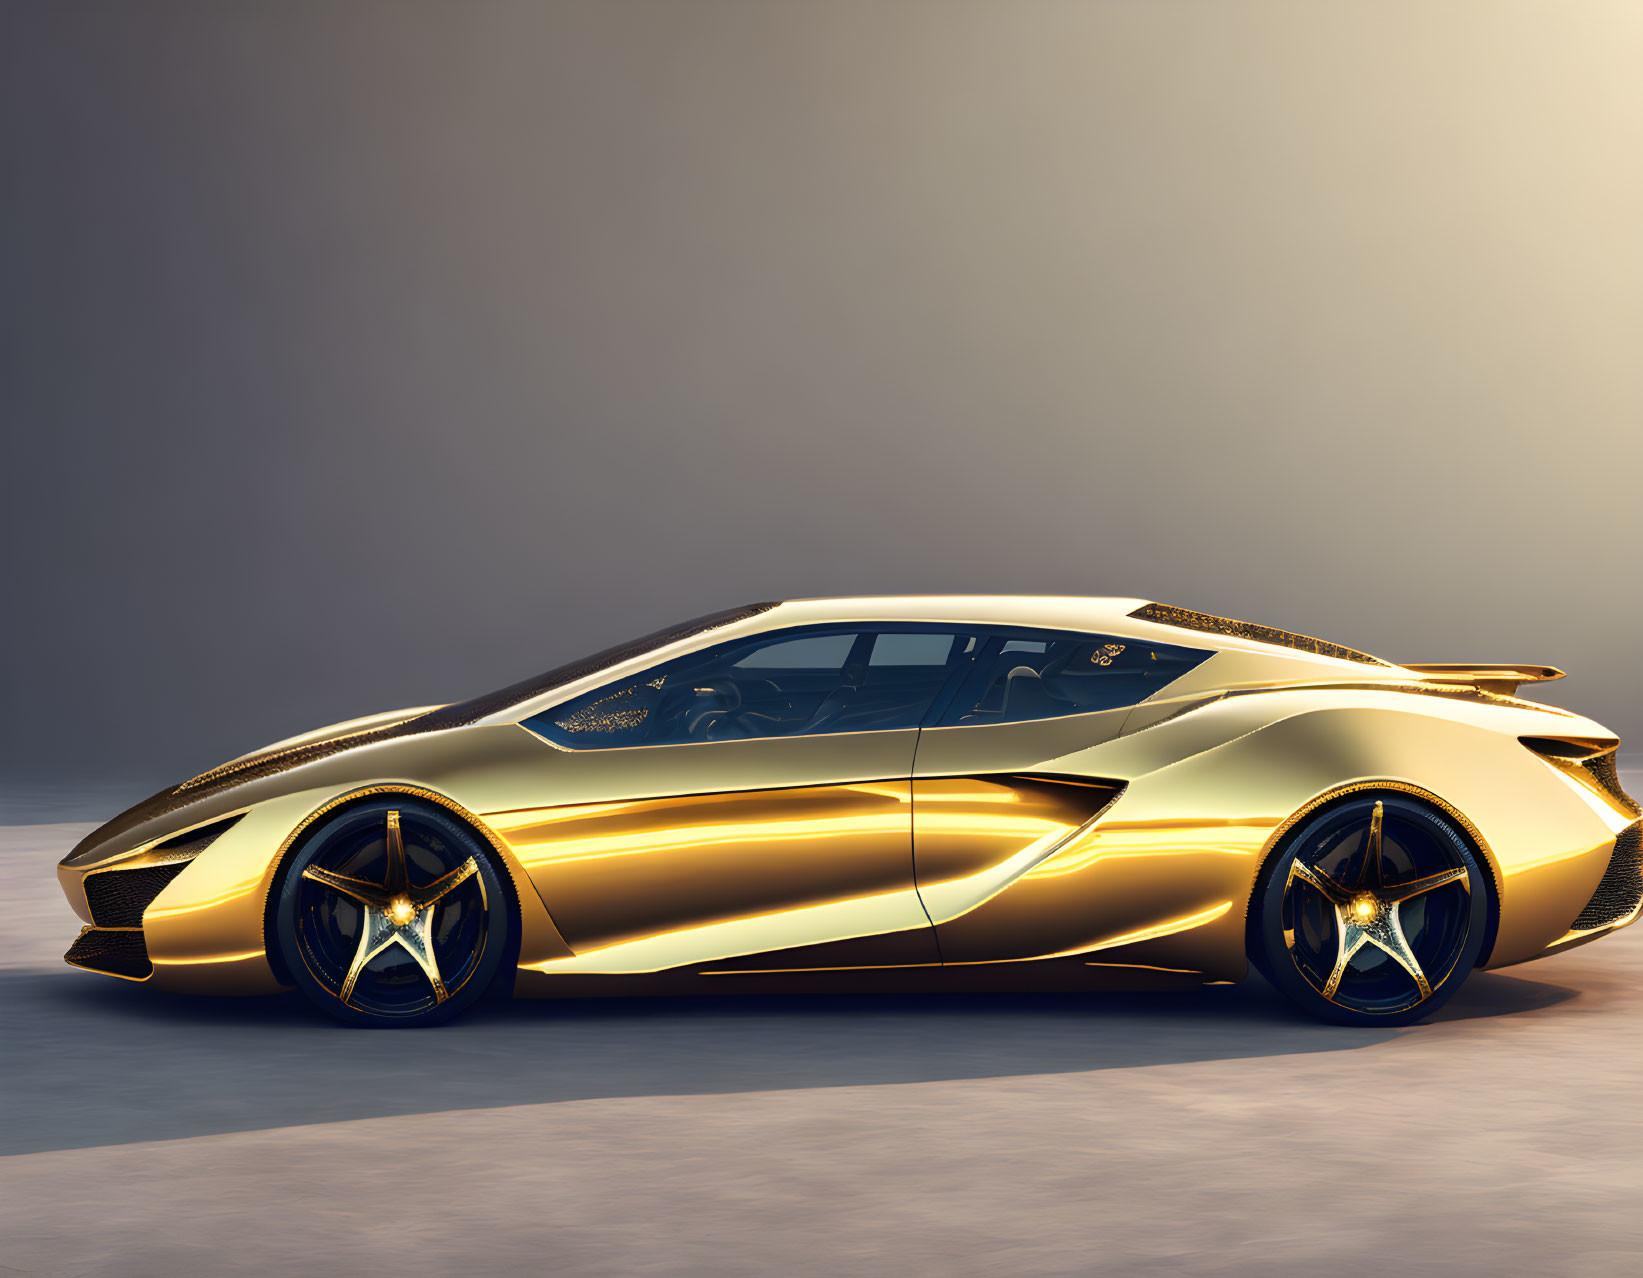 Long golden car